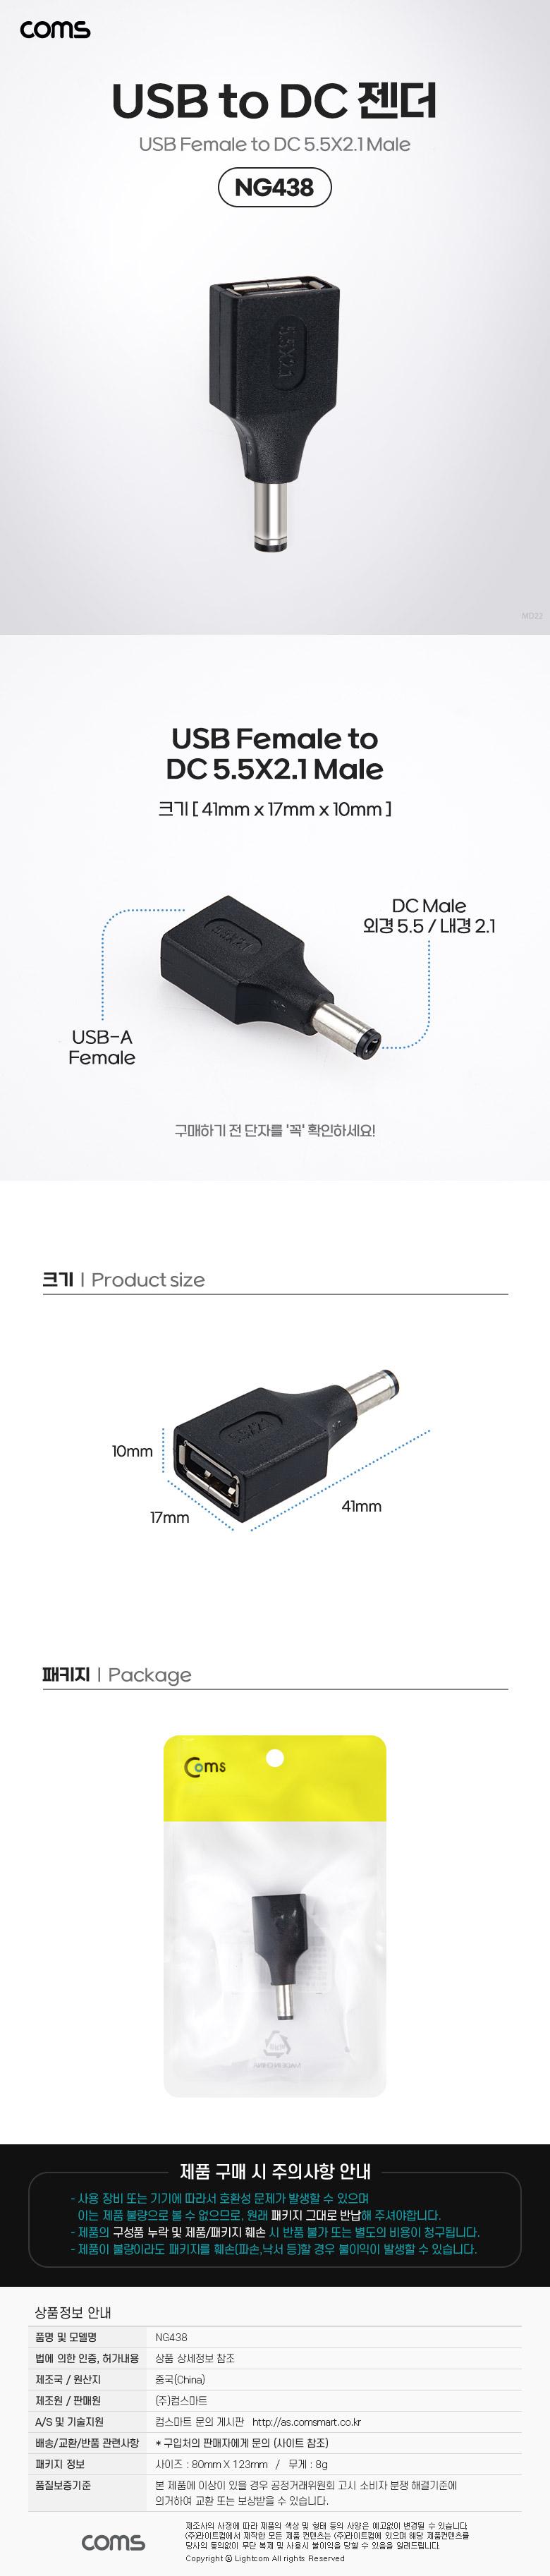 Coms USB   USB 2.0 A F to DC 5.5x2.1 M PC USB ǻͿ DC USBTODC  ǻͿǰ PCǰ